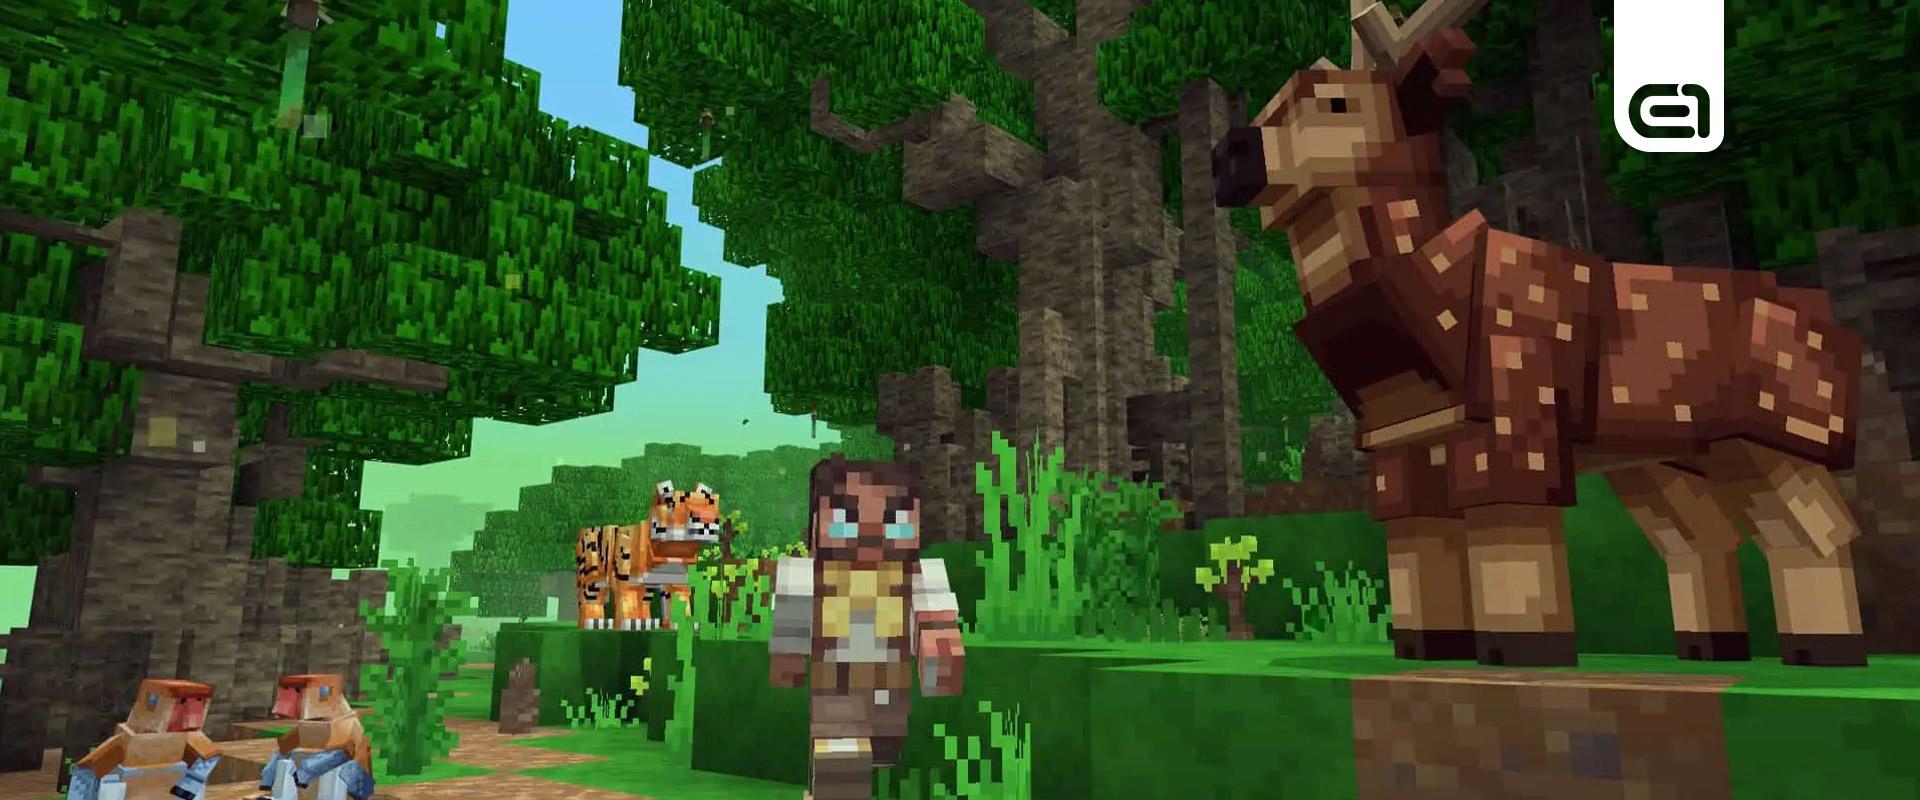 Gaming: Így segített a Minecraft megmenteni a fákat